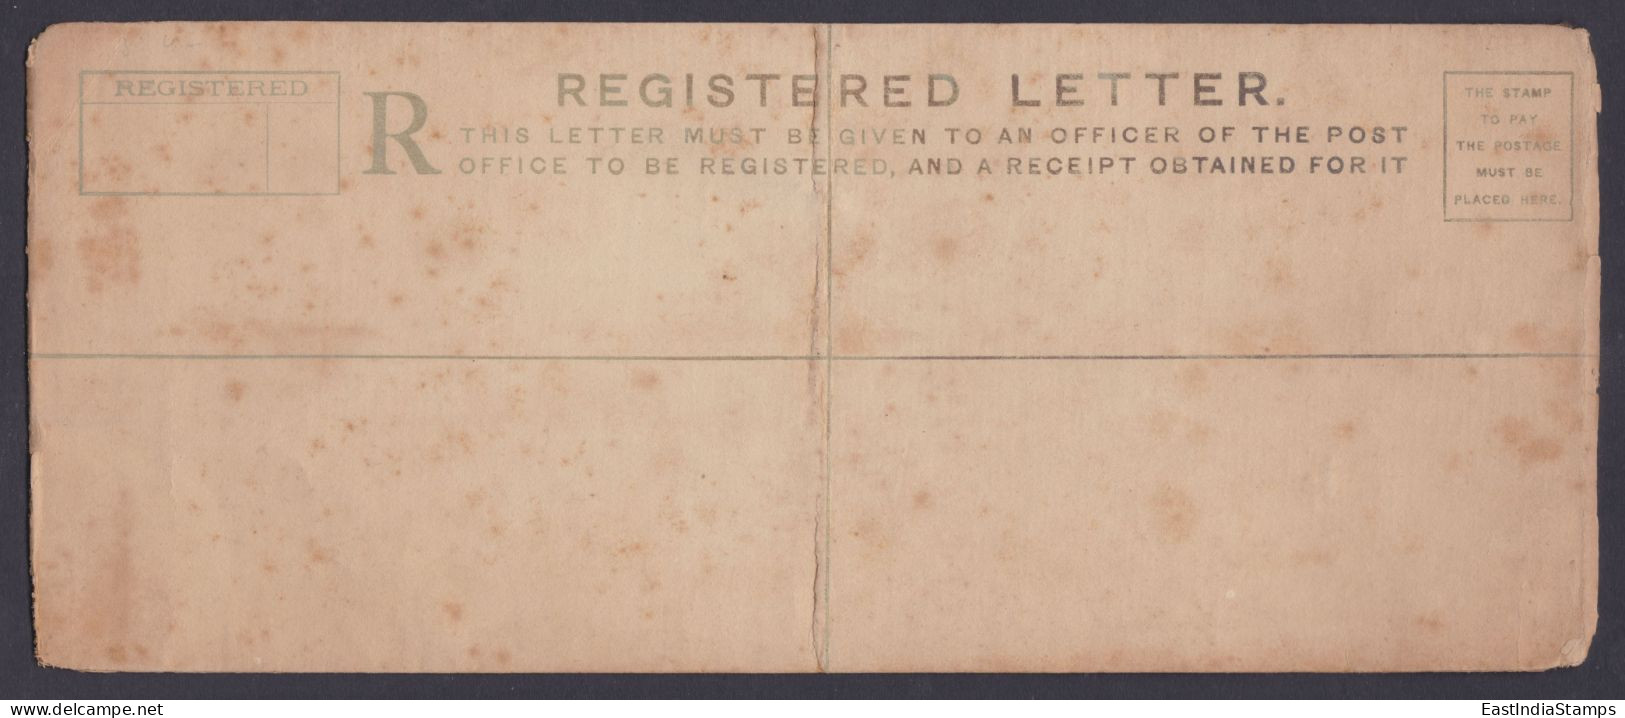 Inde British India MInt 1910's King Edward VII 2 Annas Registered Letter, Cover, Postal Stationery, Envelope - 1902-11 King Edward VII